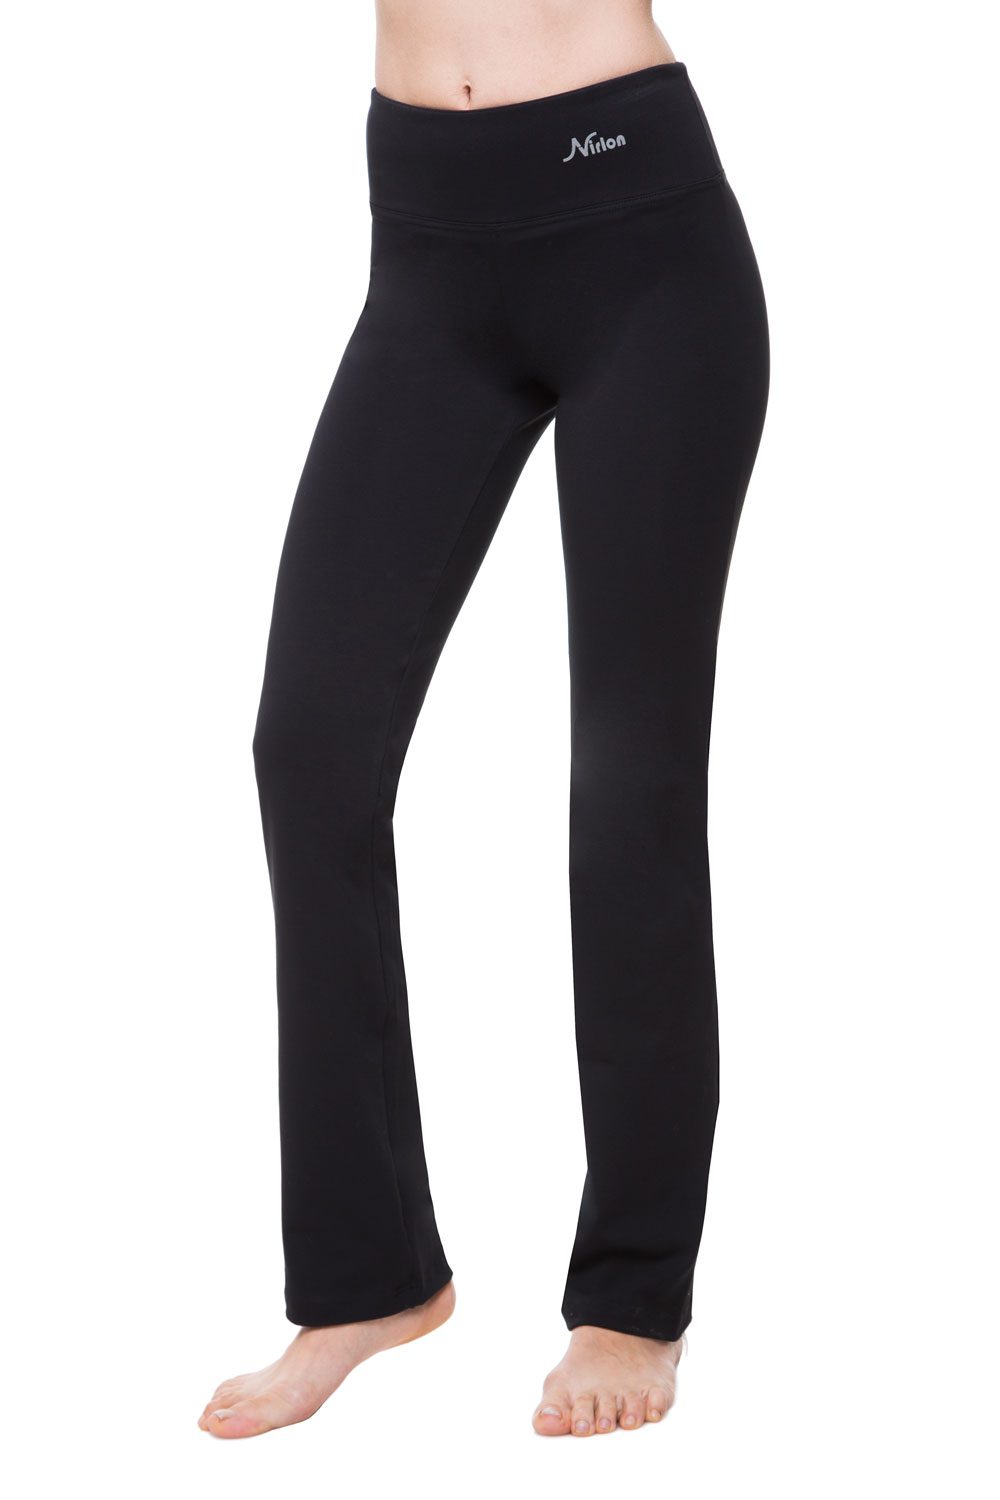 Bootcut Yoga Pants for Women – Black – Nirlon